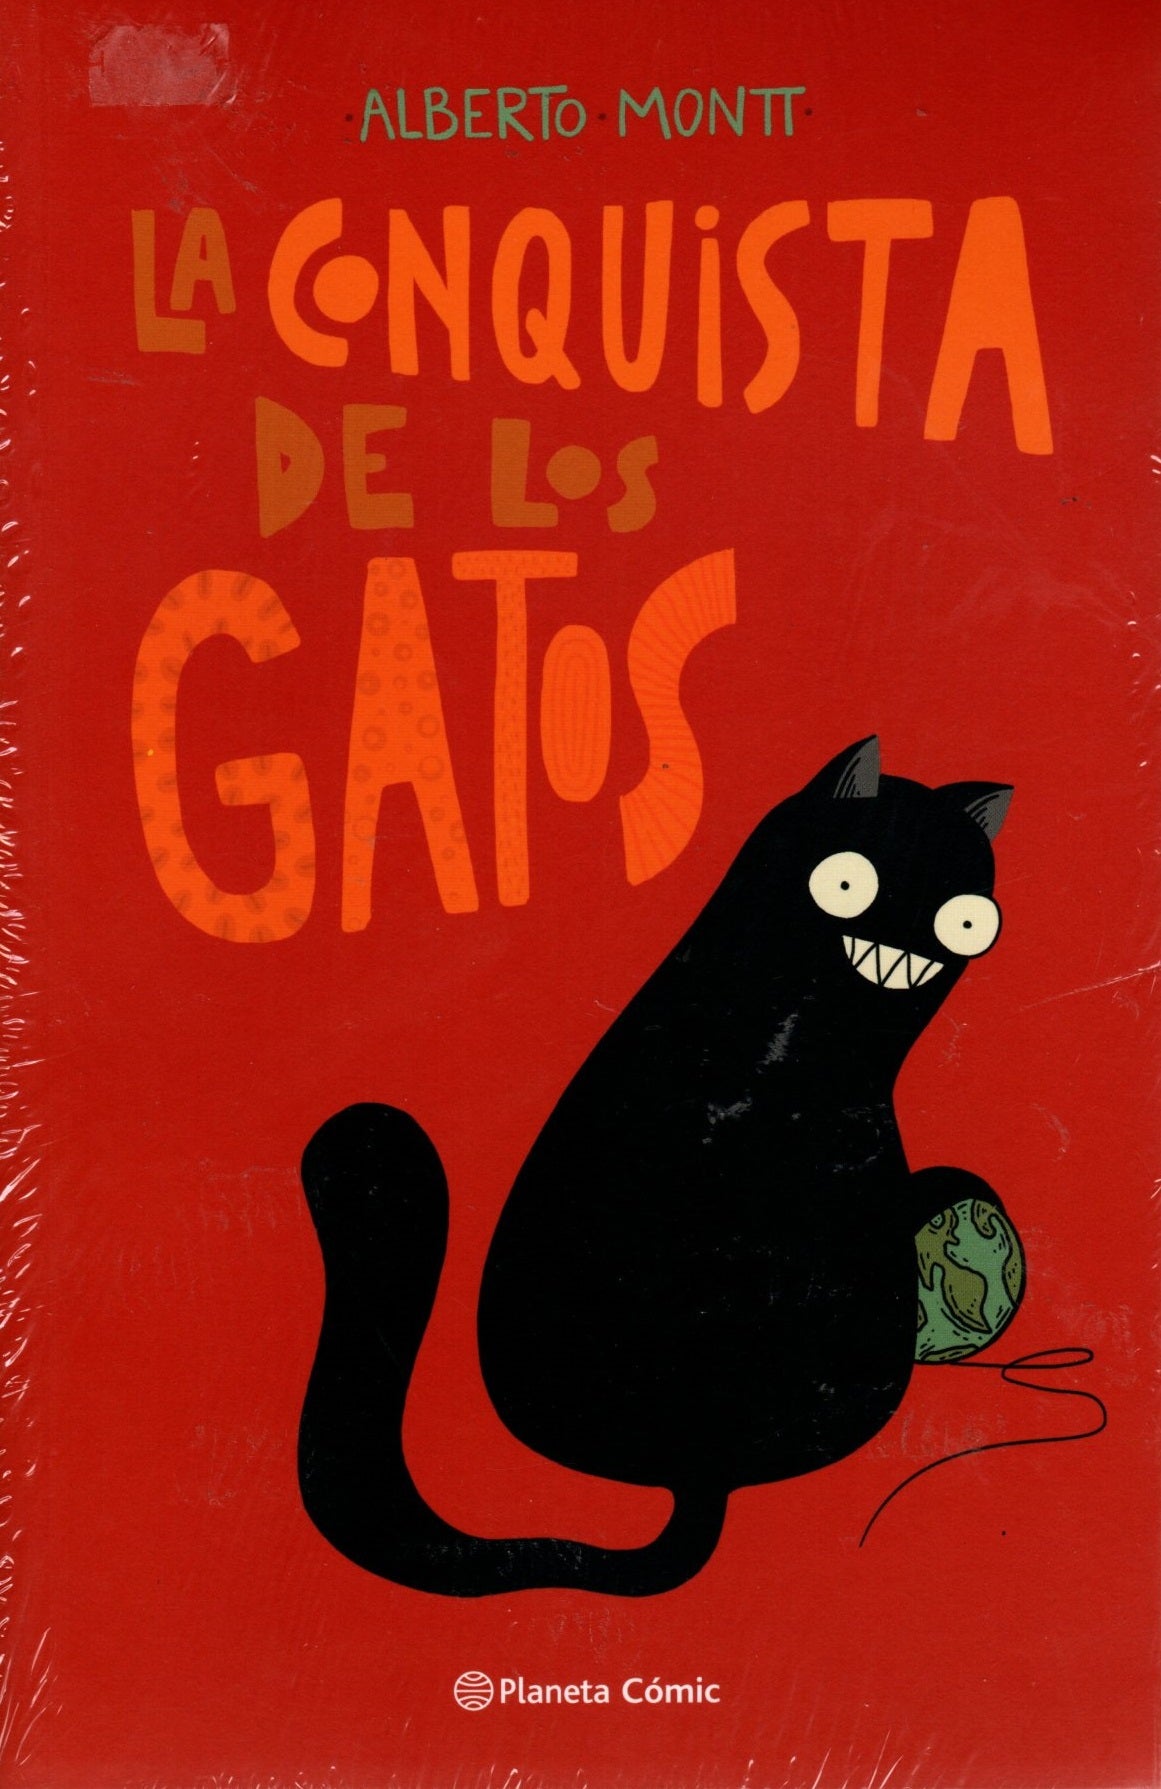 Libro Alberto Montt - La Conquista De Los Gatos